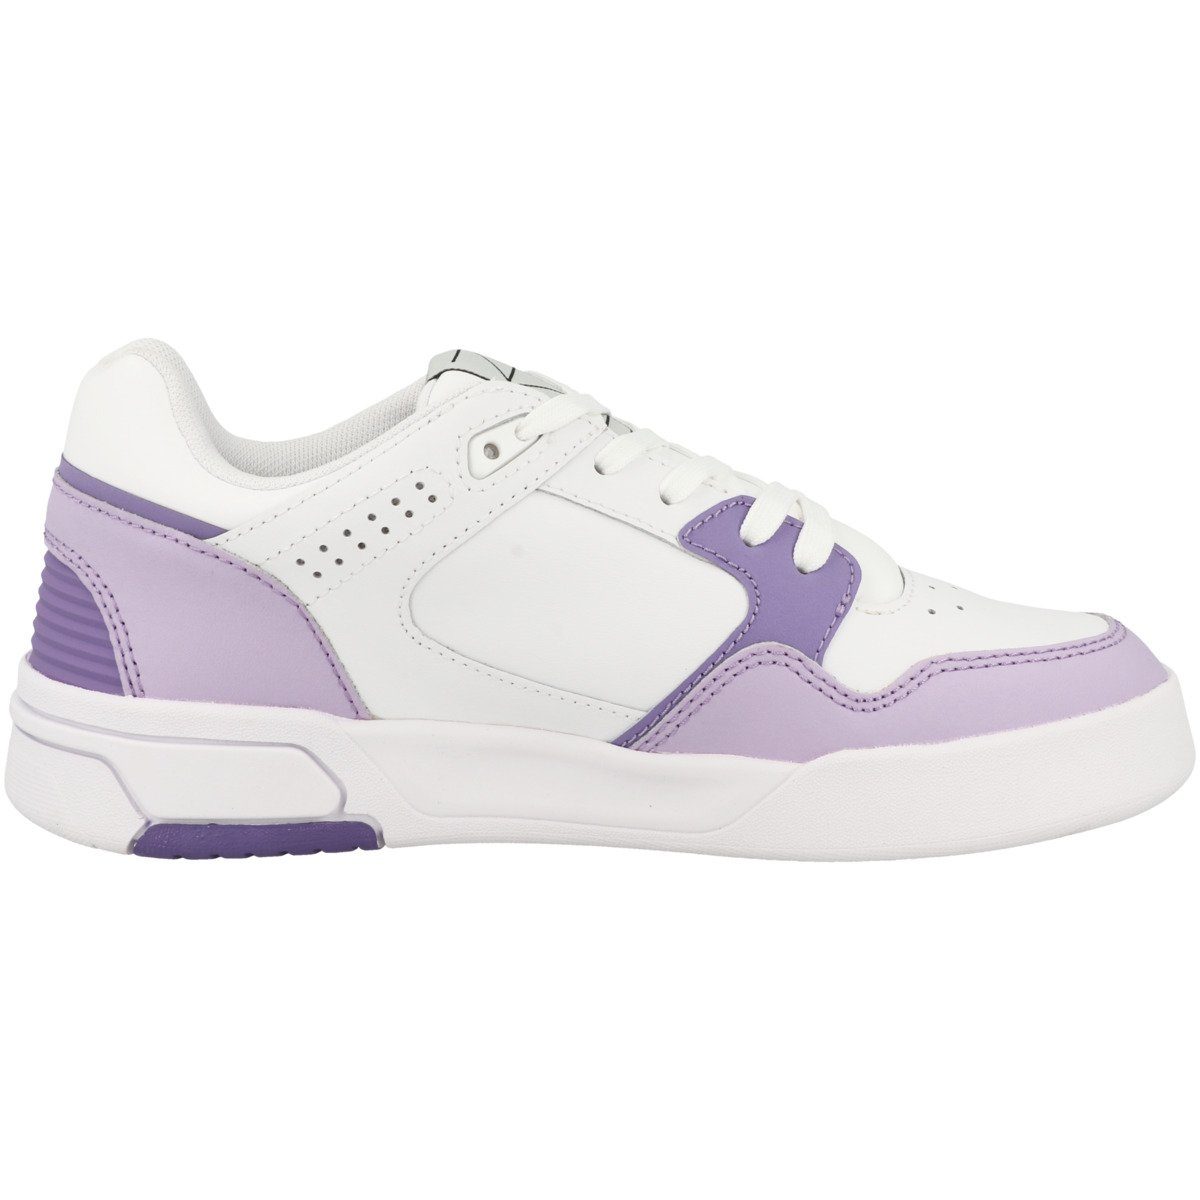 Sneaker Cut Z80 white-violet Perforation Low Shoe Damen Champion